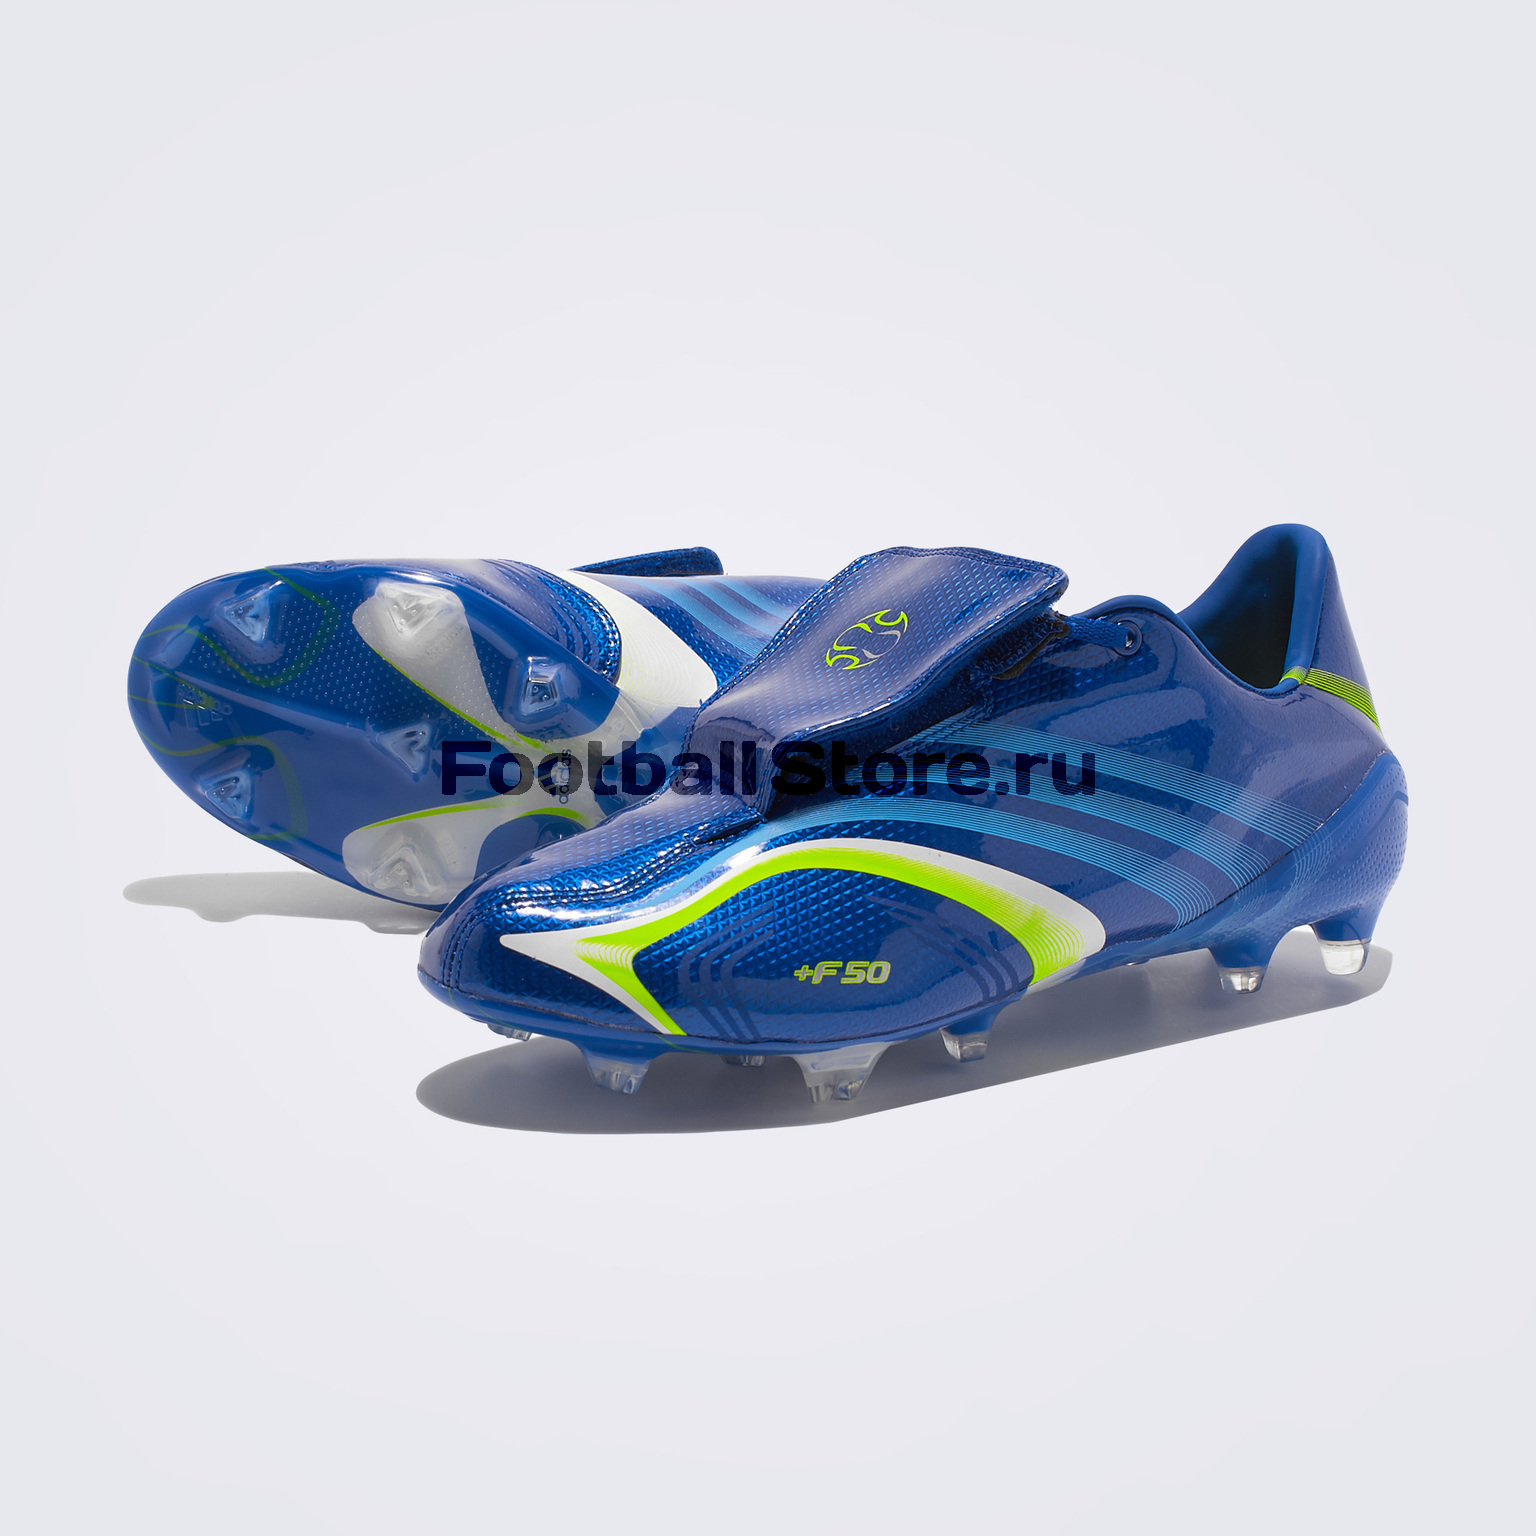 Бутсы Adidas F50 FG EE8428 – купить бутсы в интернет магазине  Footballstore, цена, фото, отзывы